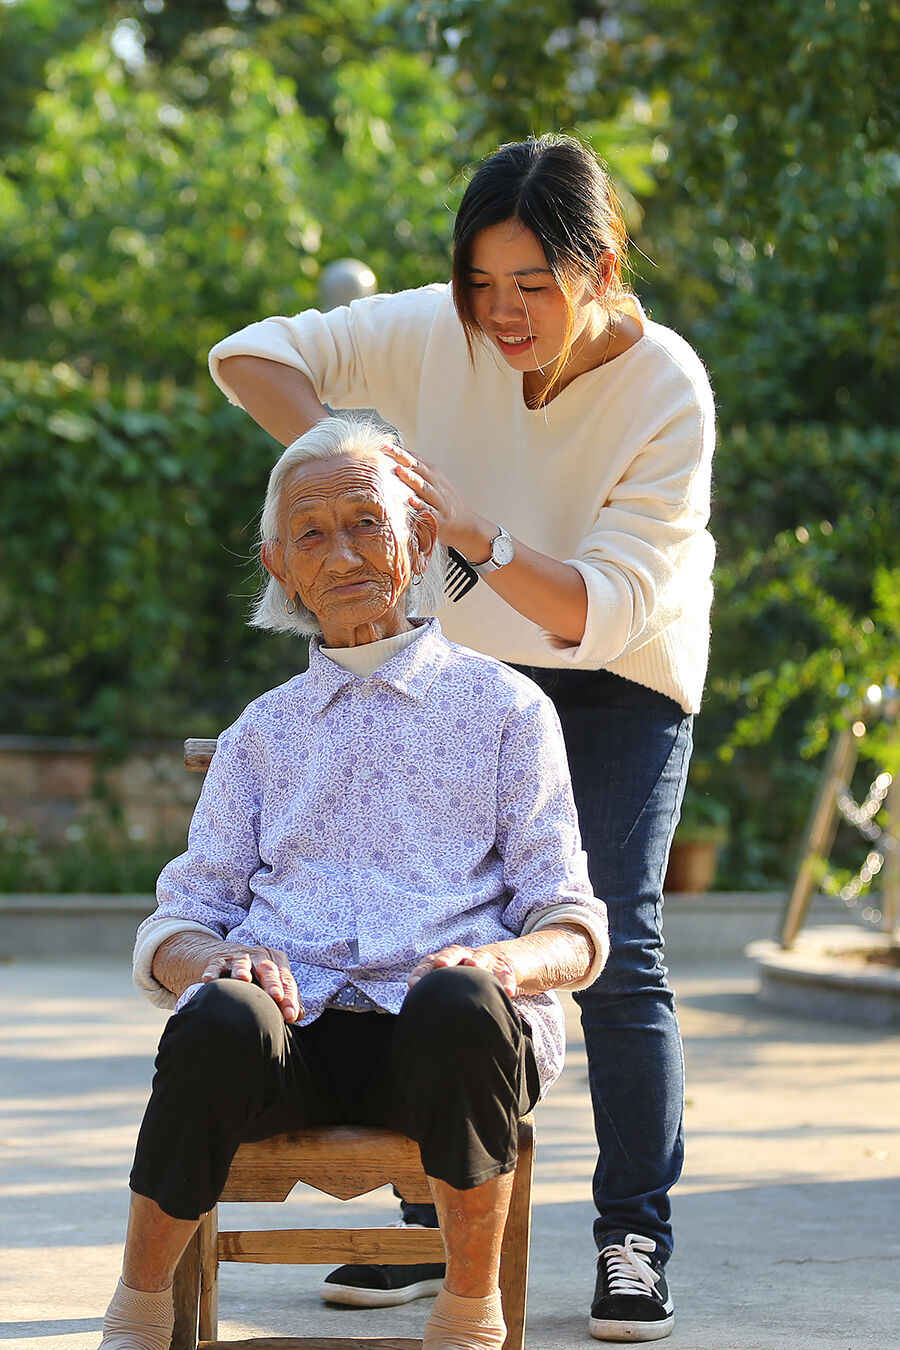 泗安镇云峰村,村妇女主任邱金红正在为老寿星梳理头发,画面十分暖心